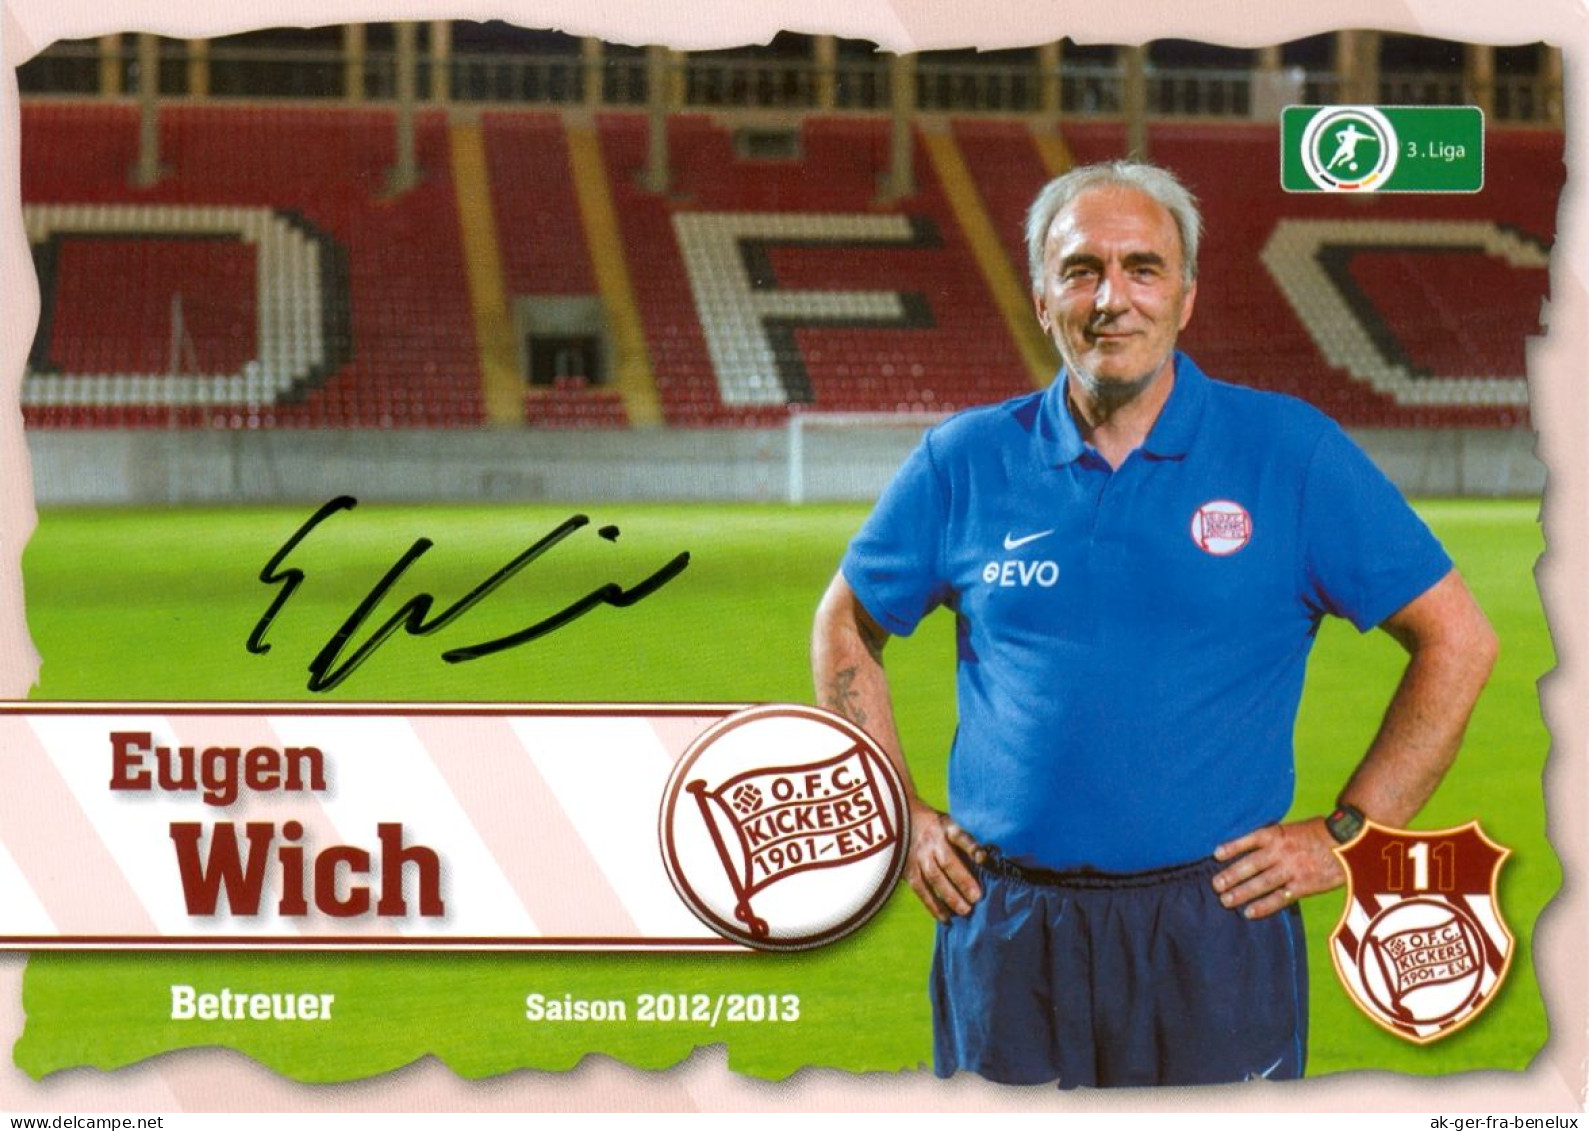 Fußball-Autogrammkarte AK Eugen Wich Offenbacher Kickers 12-13 OFC Offenbach Am Main Hessen Autogramm Fußball Football - Handtekening